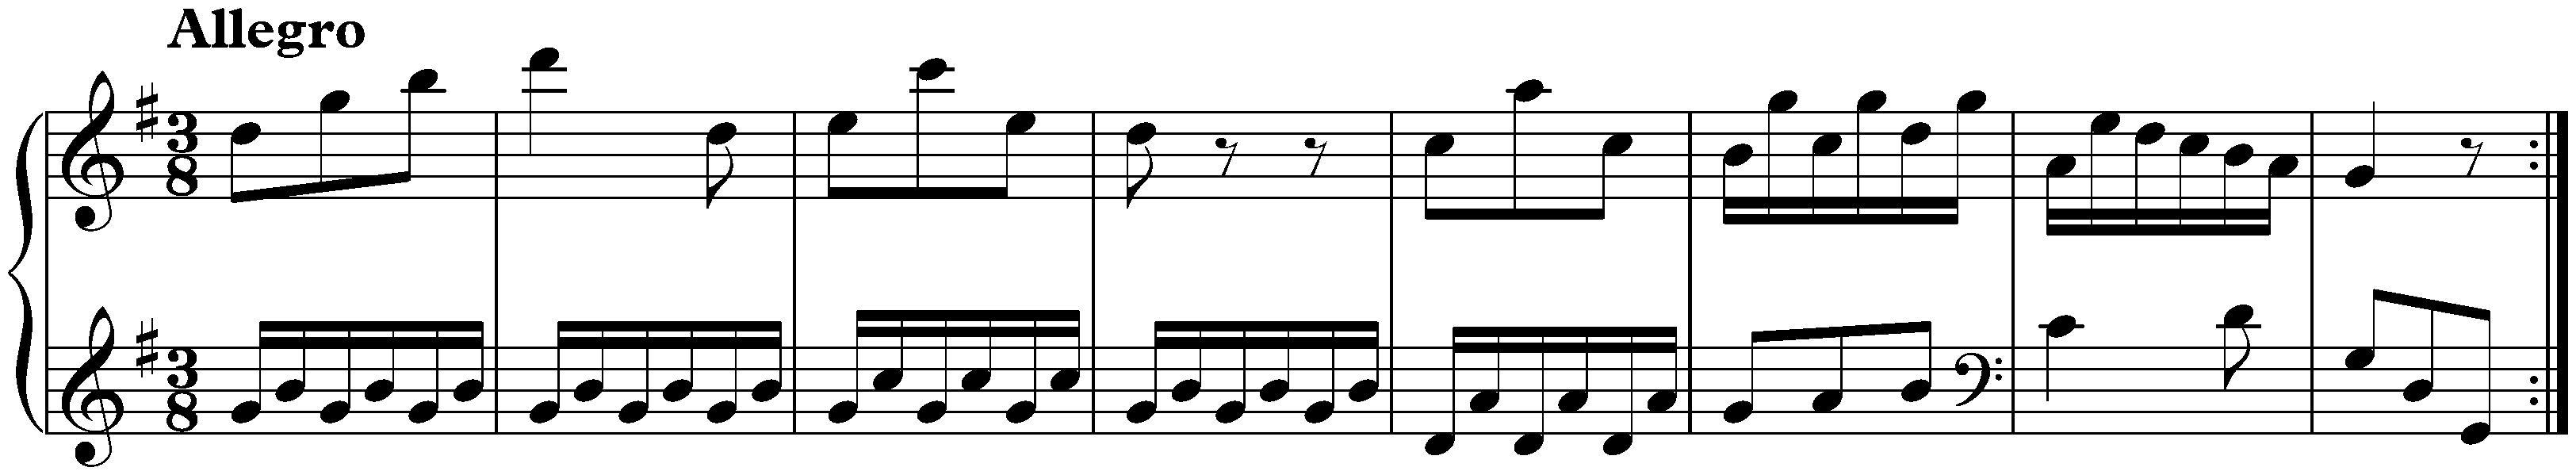 Sonata in G major, Hob. XVI:8; 4. Allegro